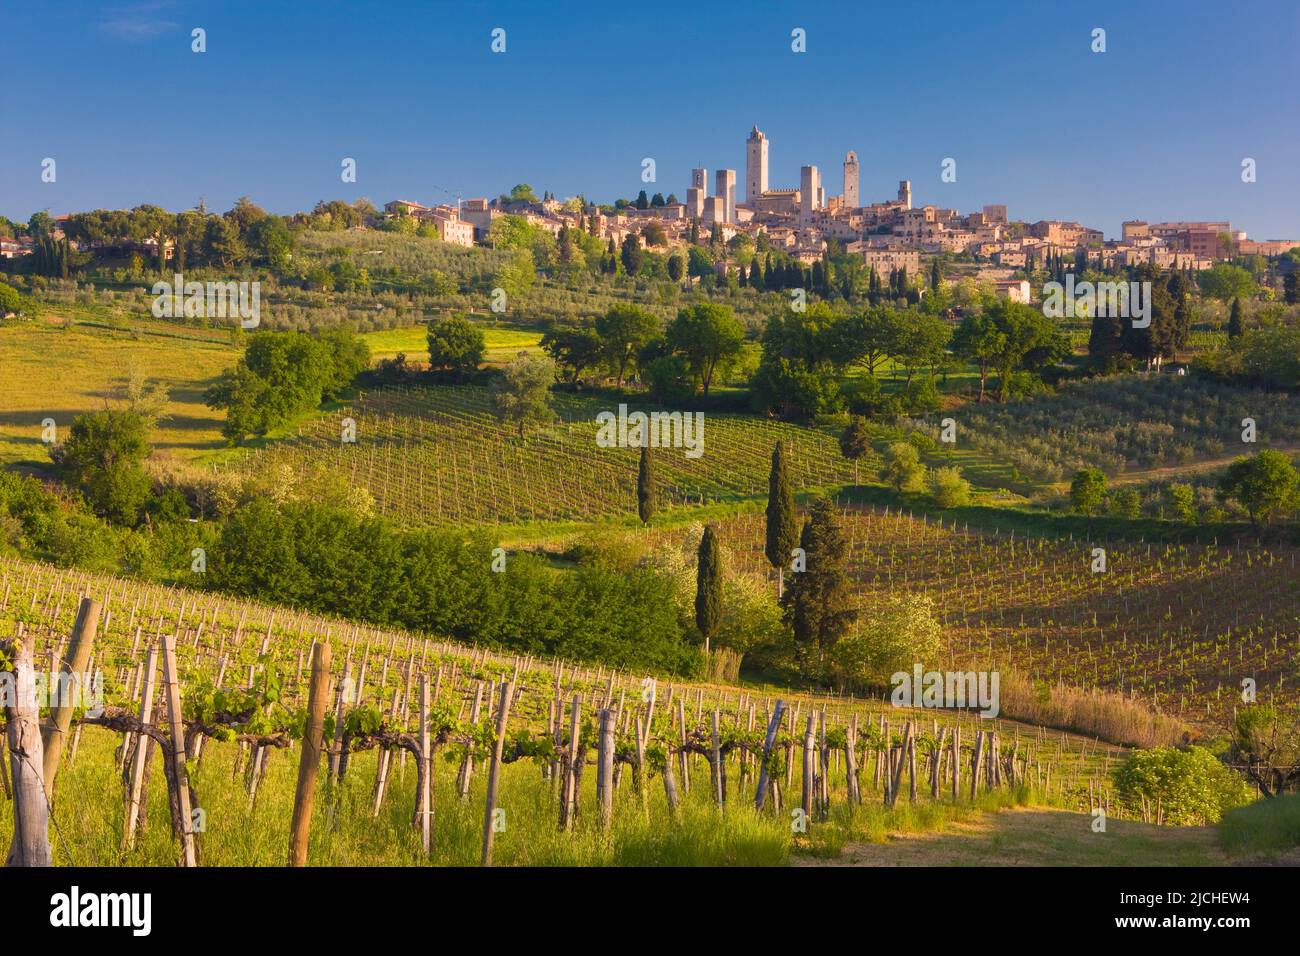 Medieval town of San Gimignano, Tuscany, Italy Stock Photo